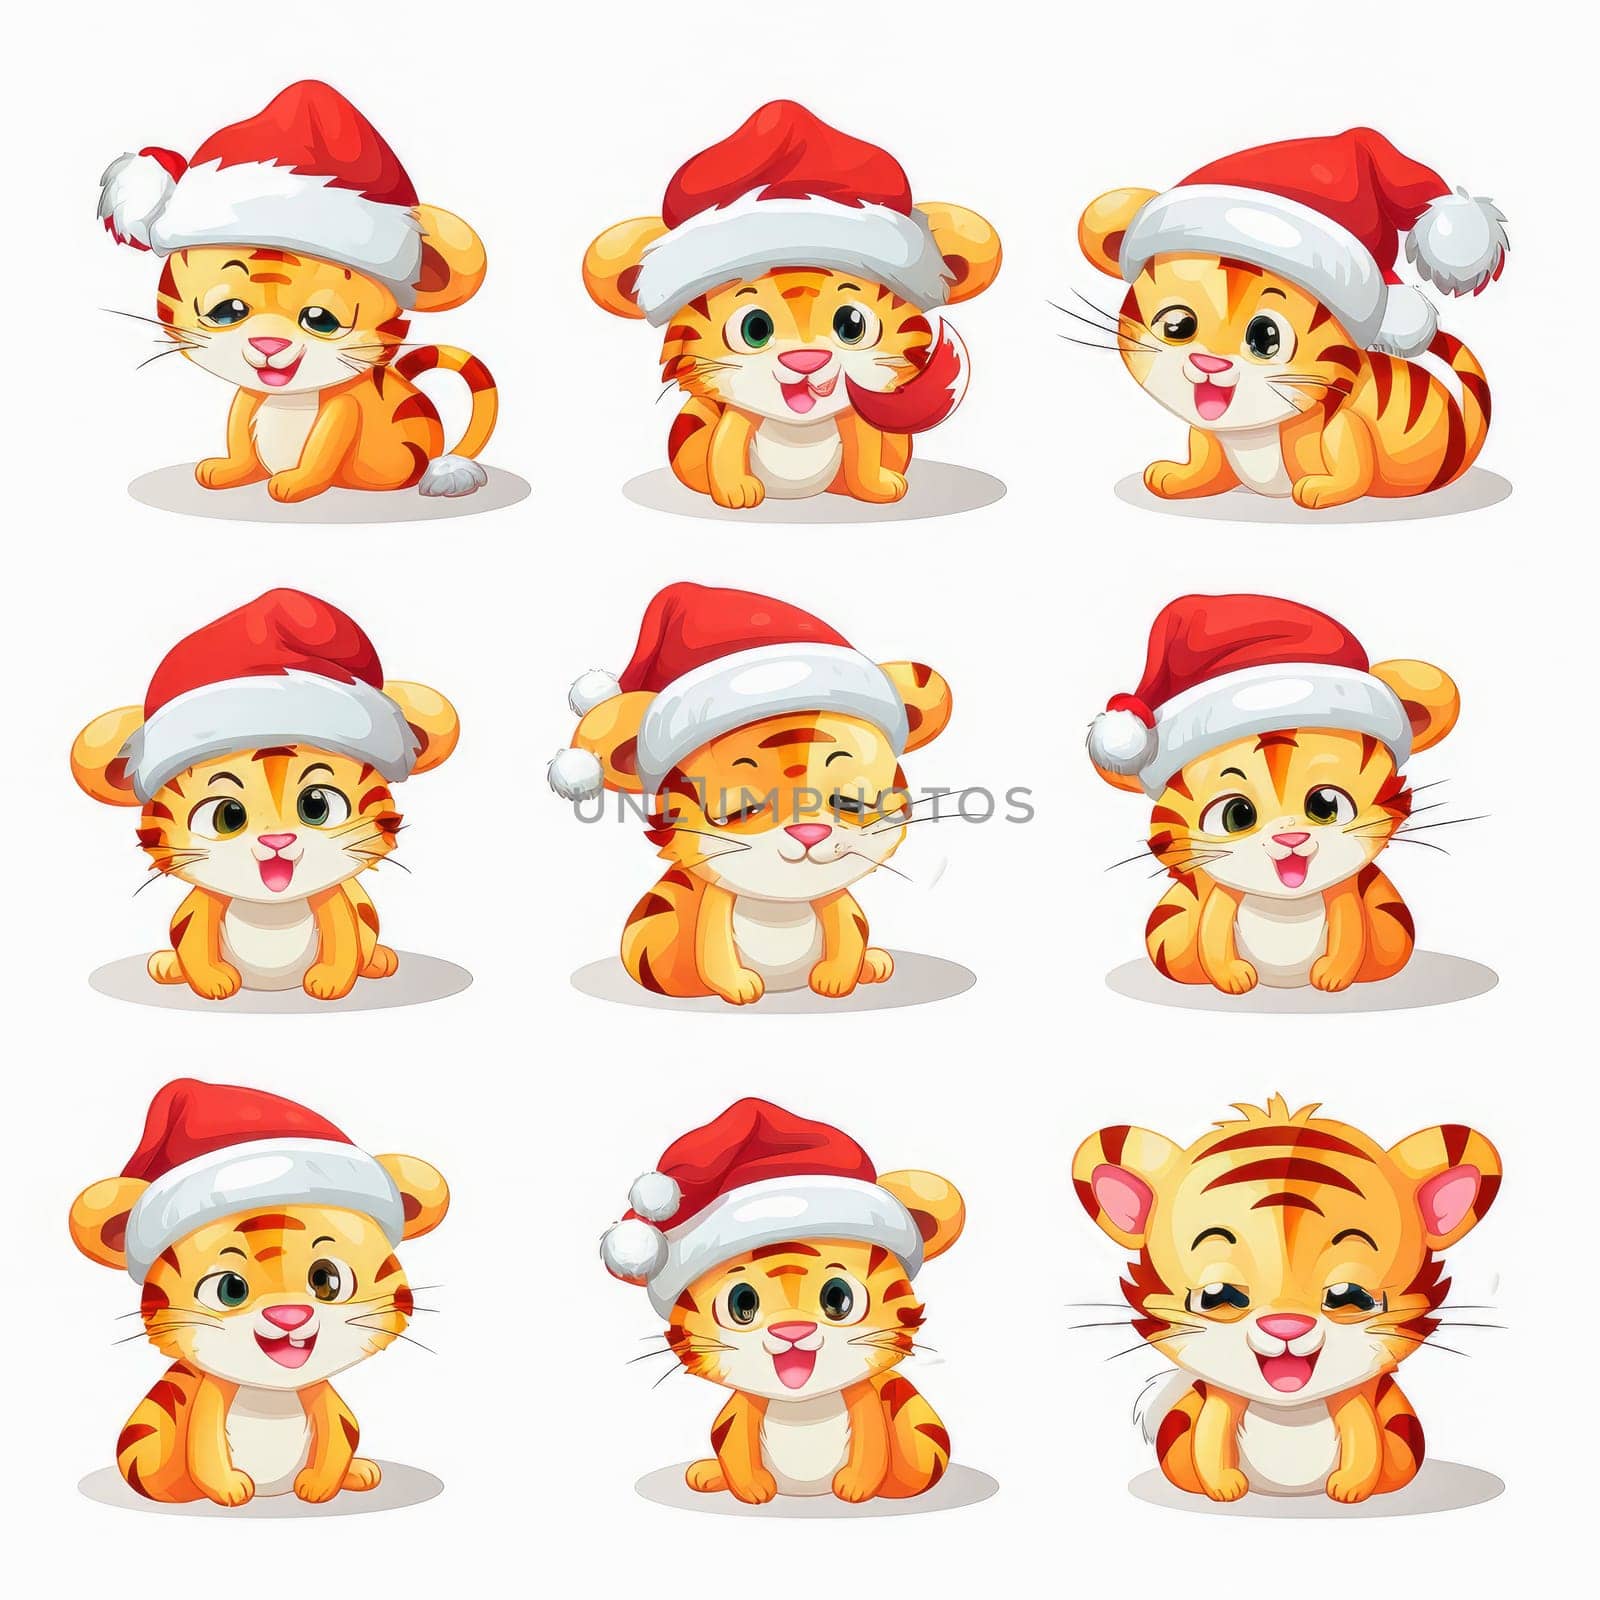 New year emoji funny tiger cub. Cartoon style, New Year, Christmas. by Yurich32